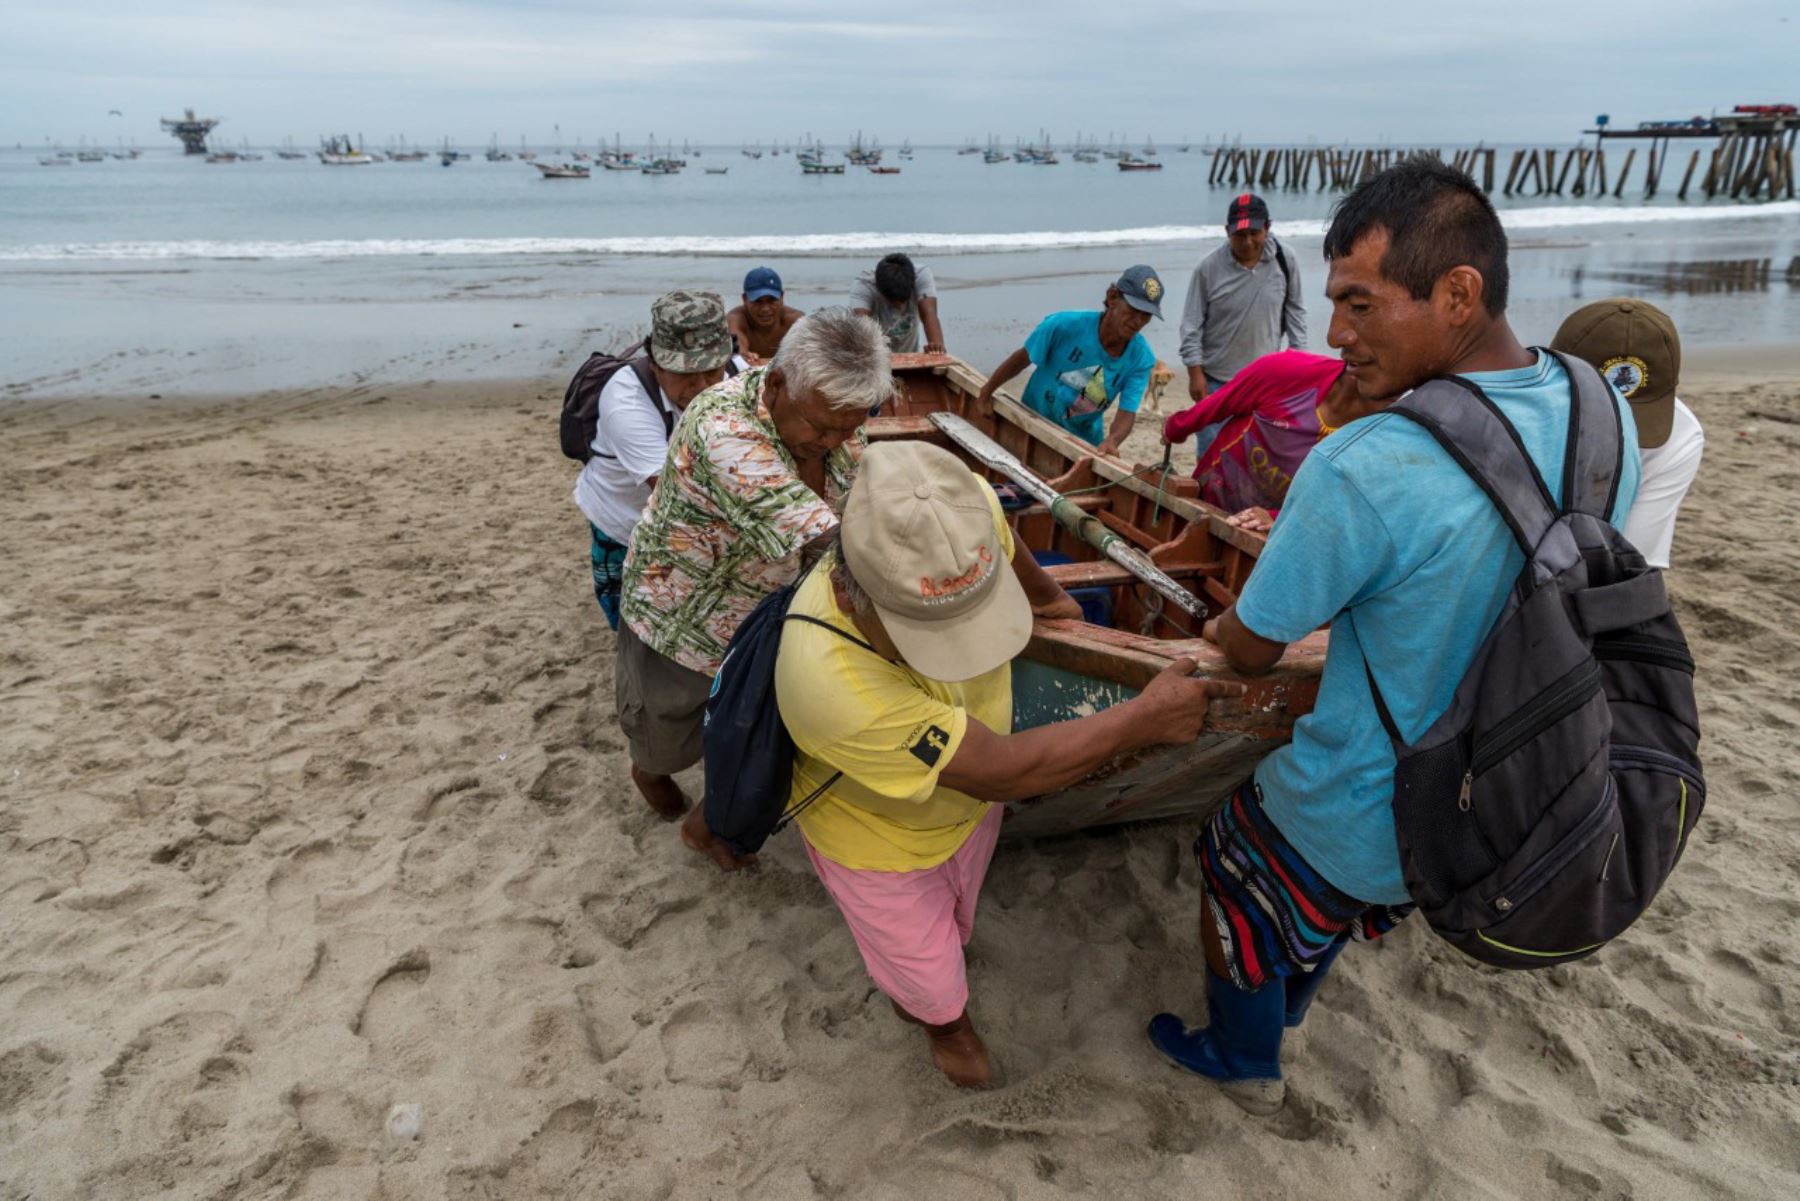 En el Día Mundial de los Océanos que se conmemora cada 08 de junio, recordamos que el mar peruano es uno de los más ricos del mundo y genera en promedio 250 mil empleos y $ 3200 millones de dólares anuales. Foto: Cortesía/ Andre Baertschi